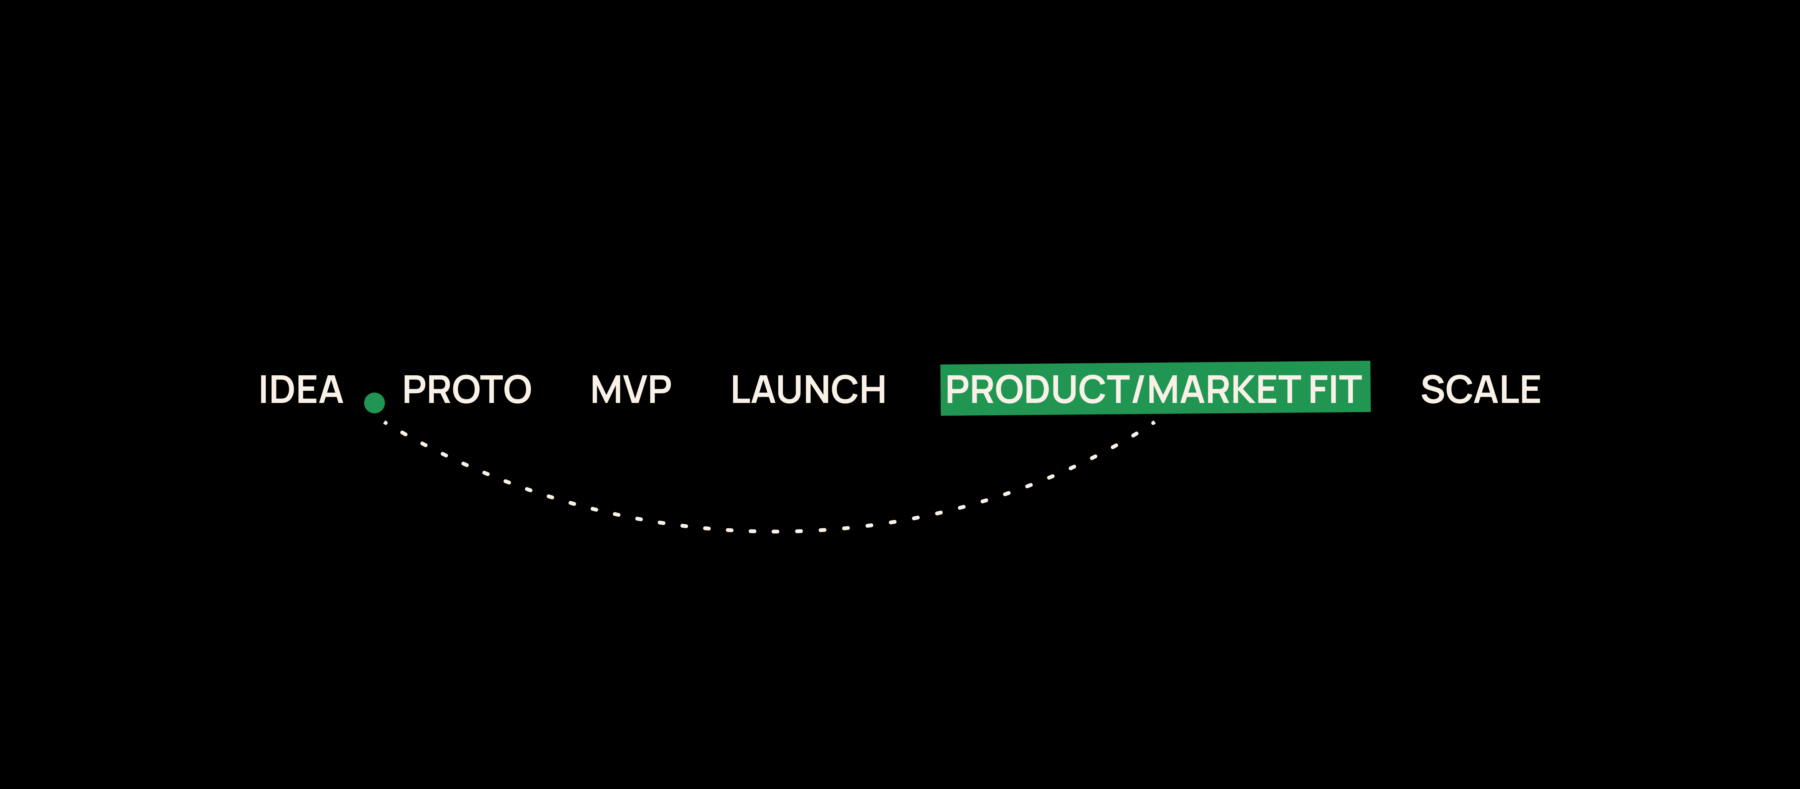 Aloita Product/Market Fitin etsintä ennen julkaisua